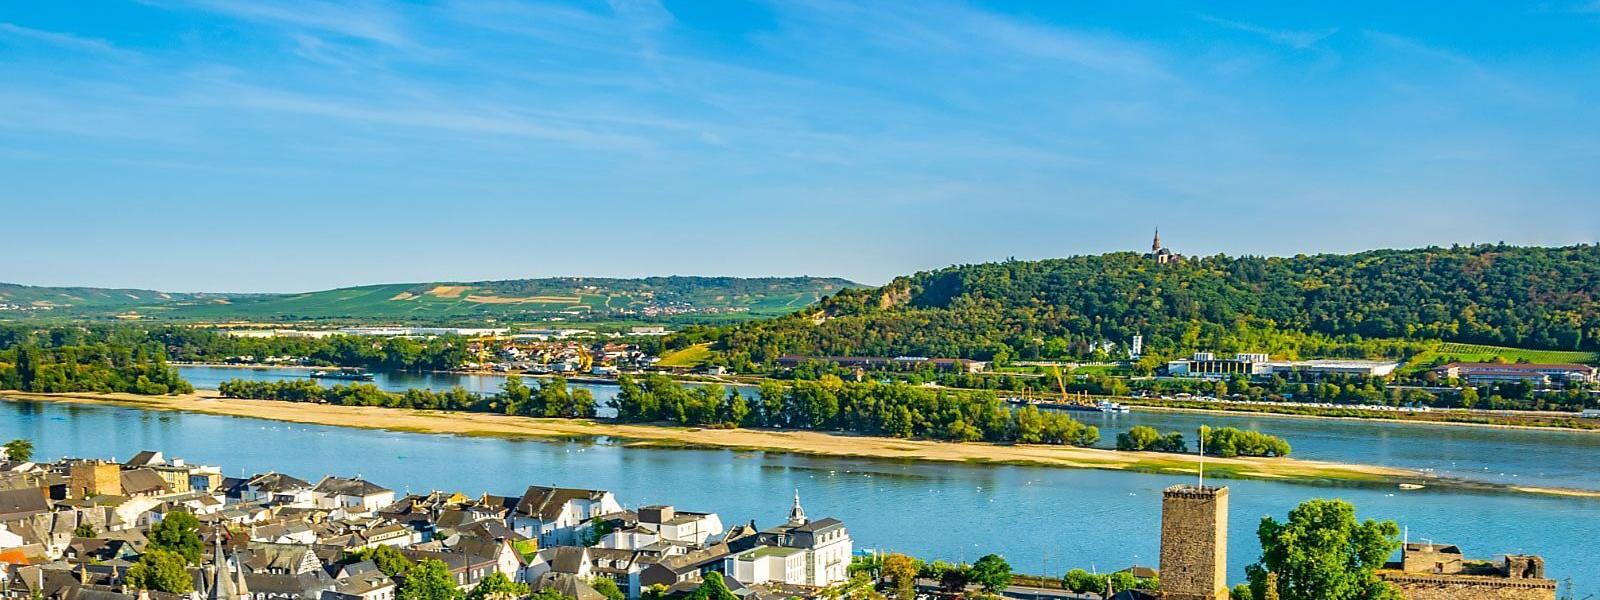 Ferienwohnungen und Ferienhäuser in Rheinland-Pfalz - e-domizil